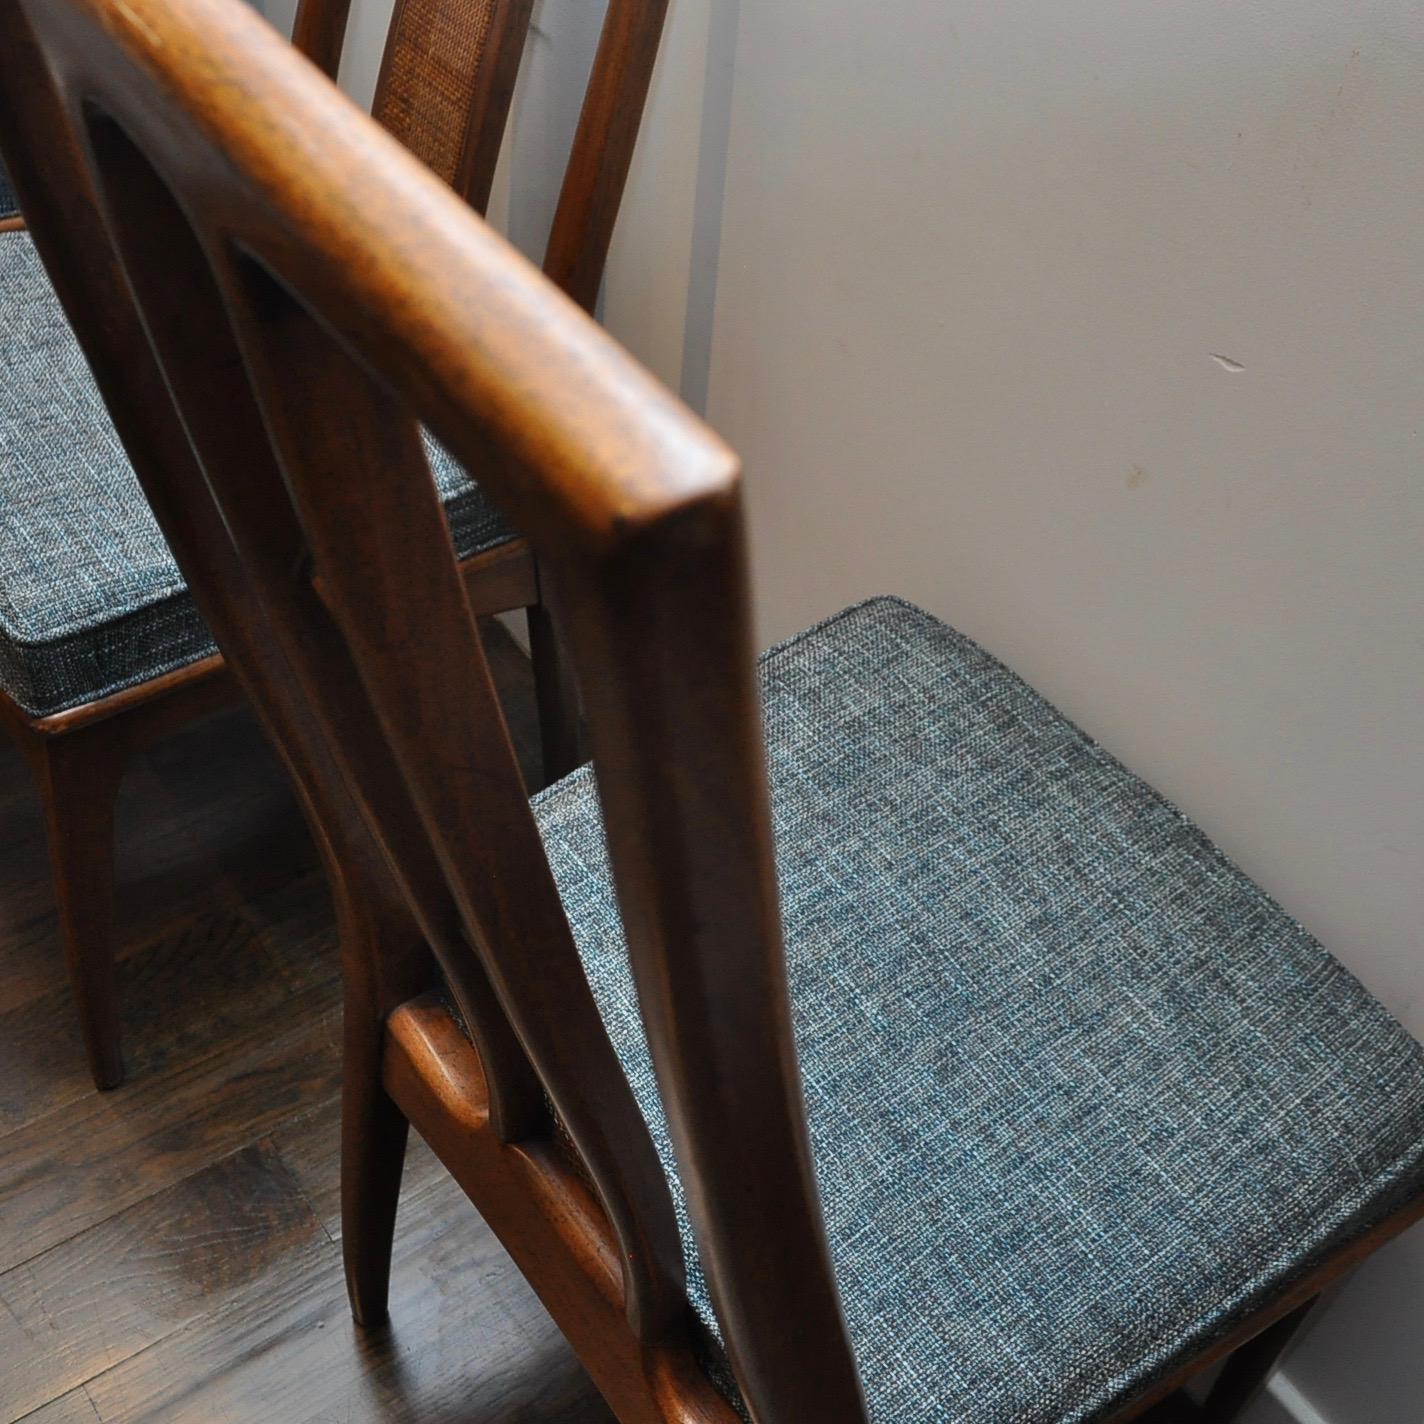 Fabric Midcentury John Stuart Cane Back Dining Chairs